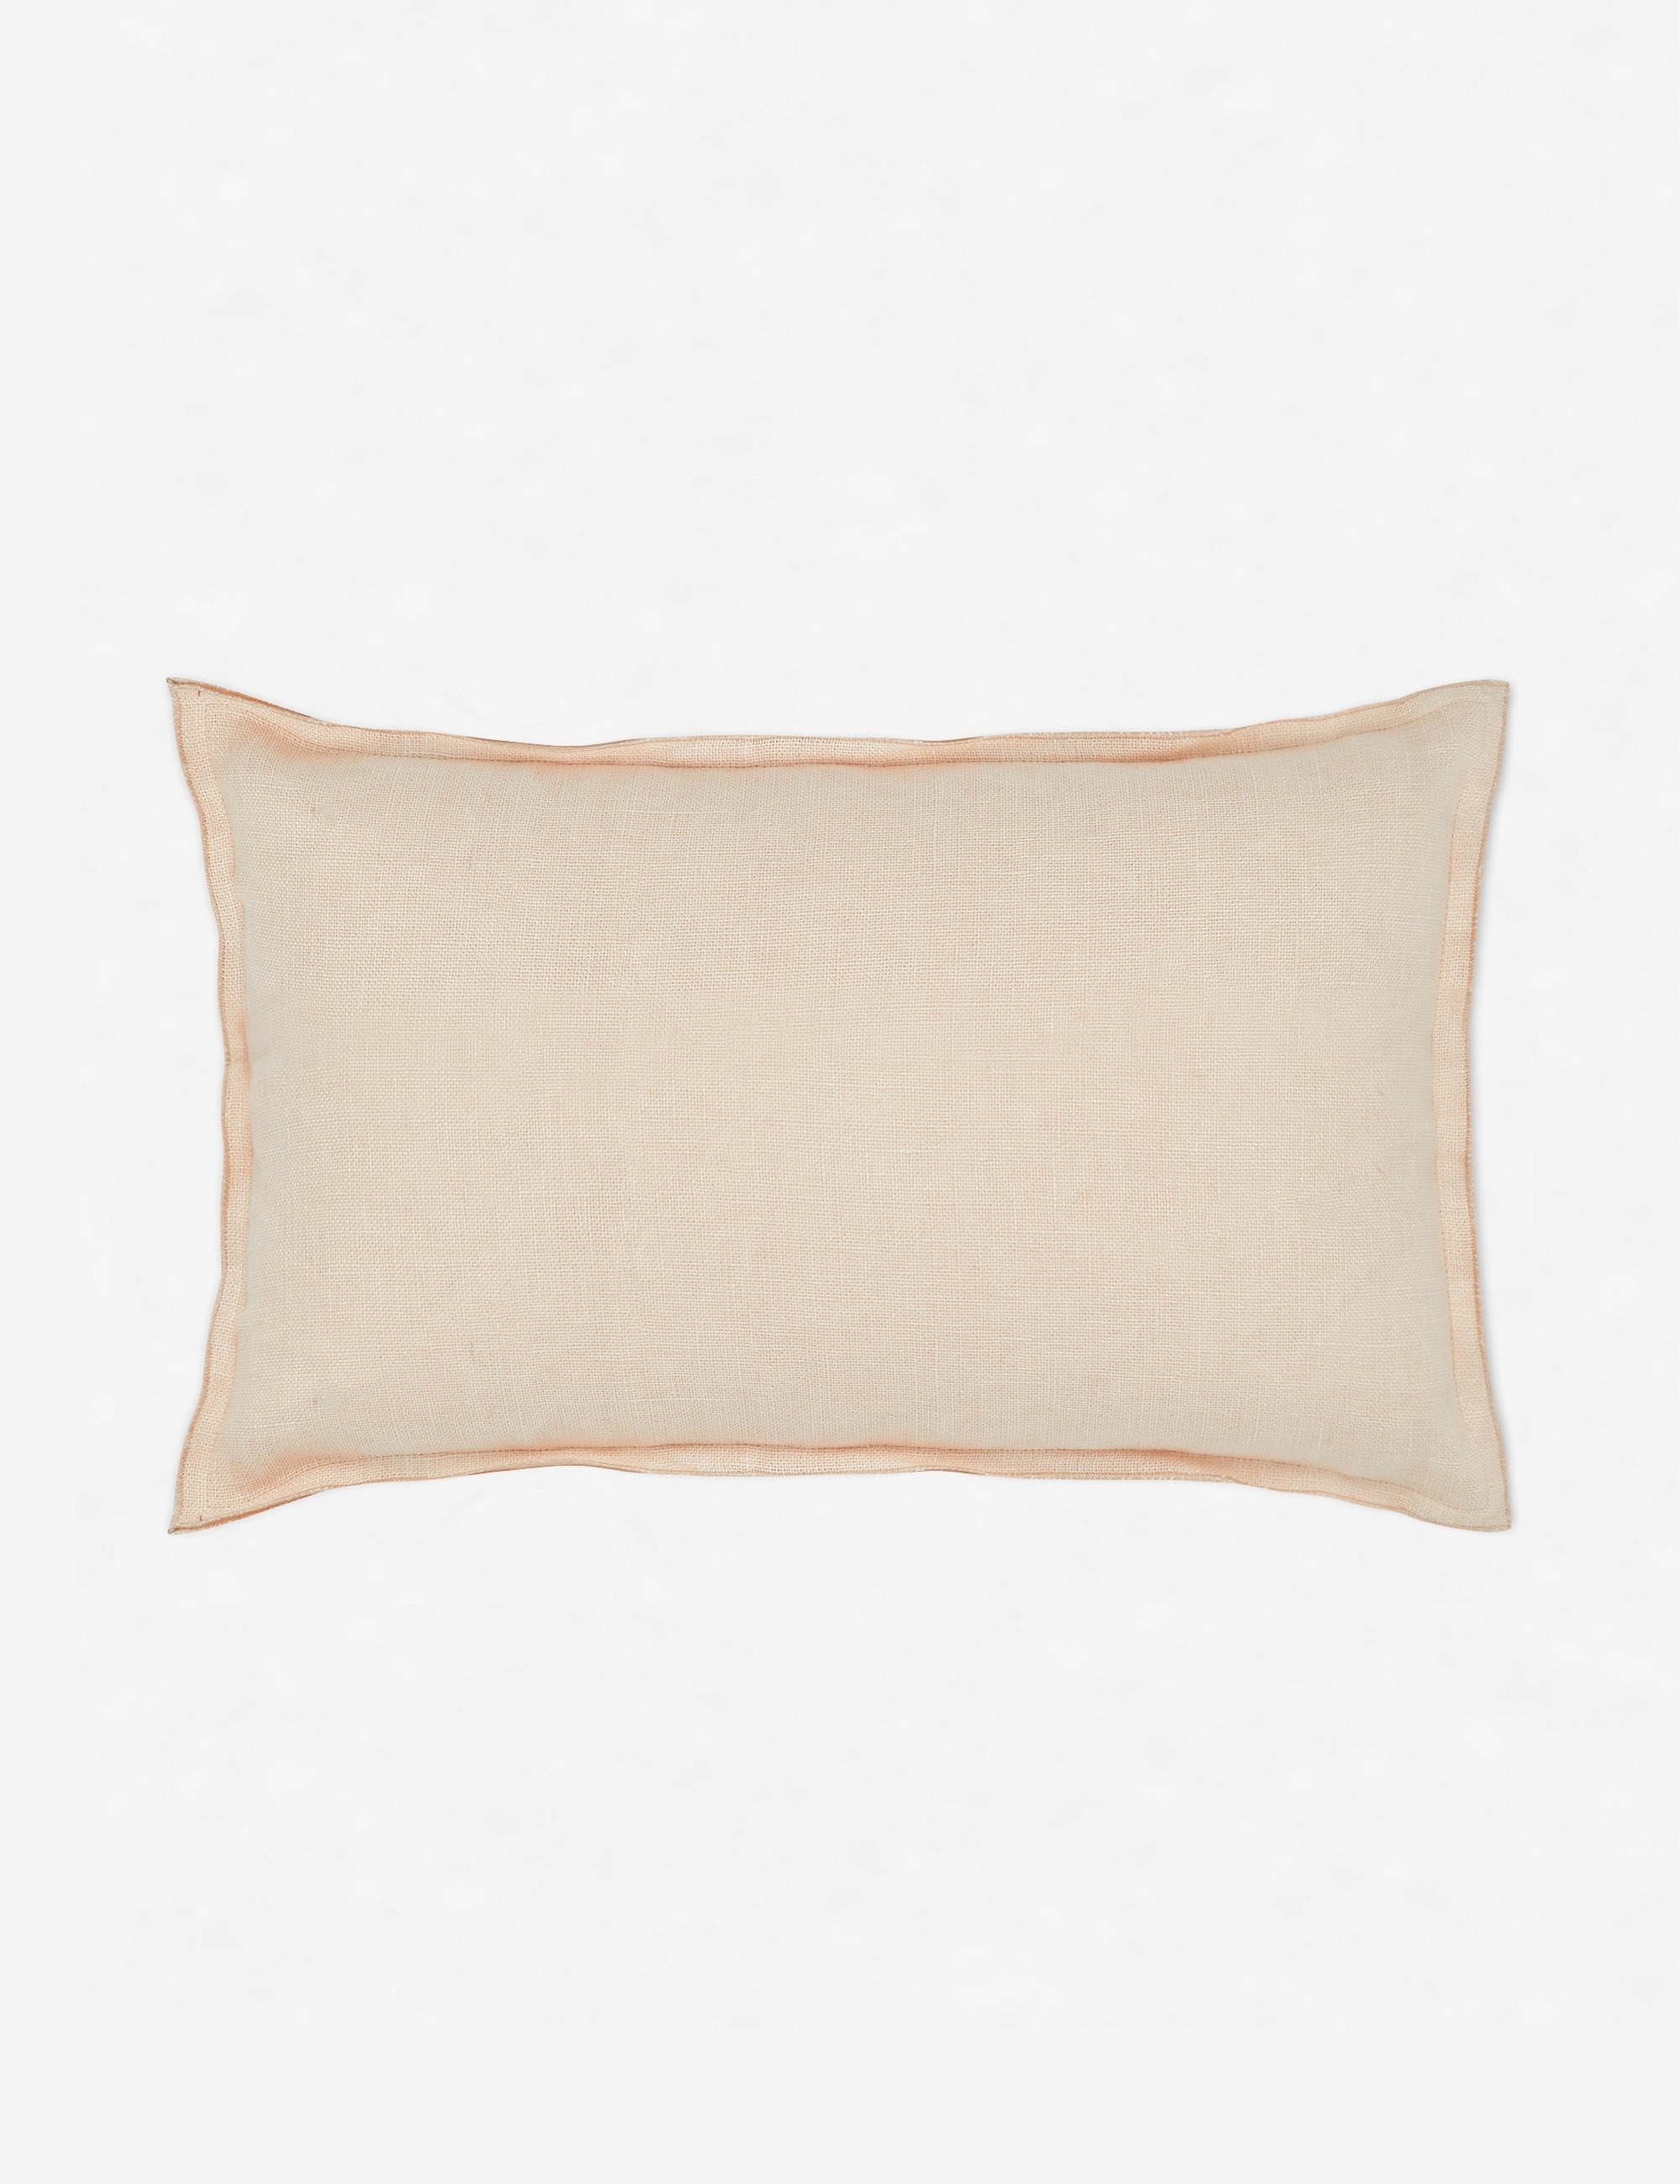 Arlo Linen Lumbar Pillow, Blush - Image 0